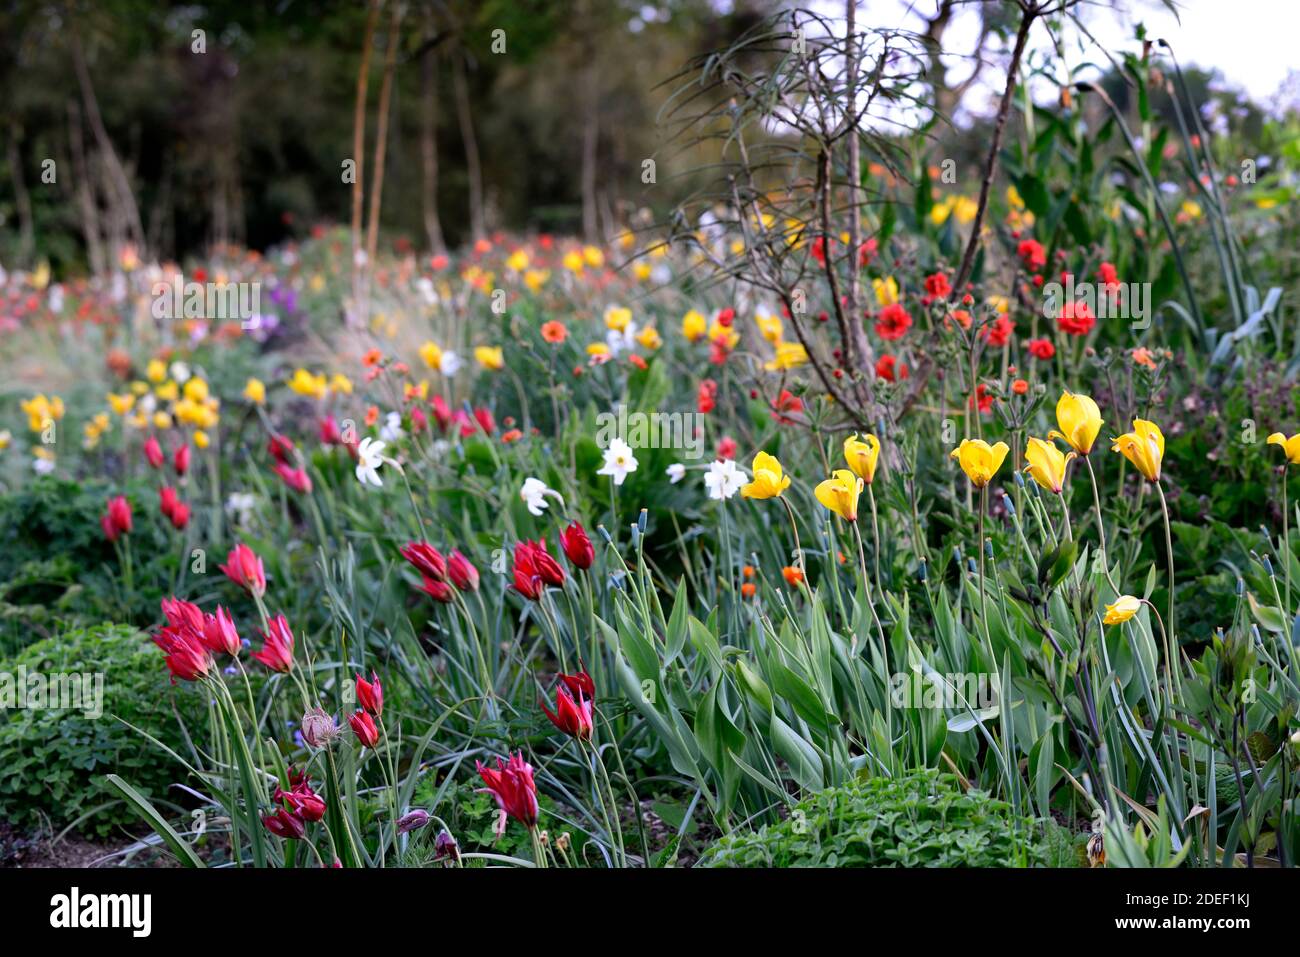 Tulipa Showwinner, tulip Showwinner,Tulipa kaufmanniana Show Winner,tulipa sylvestris,red yellow tulips,red yellow tulip flowers,wild,natural planting Stock Photo